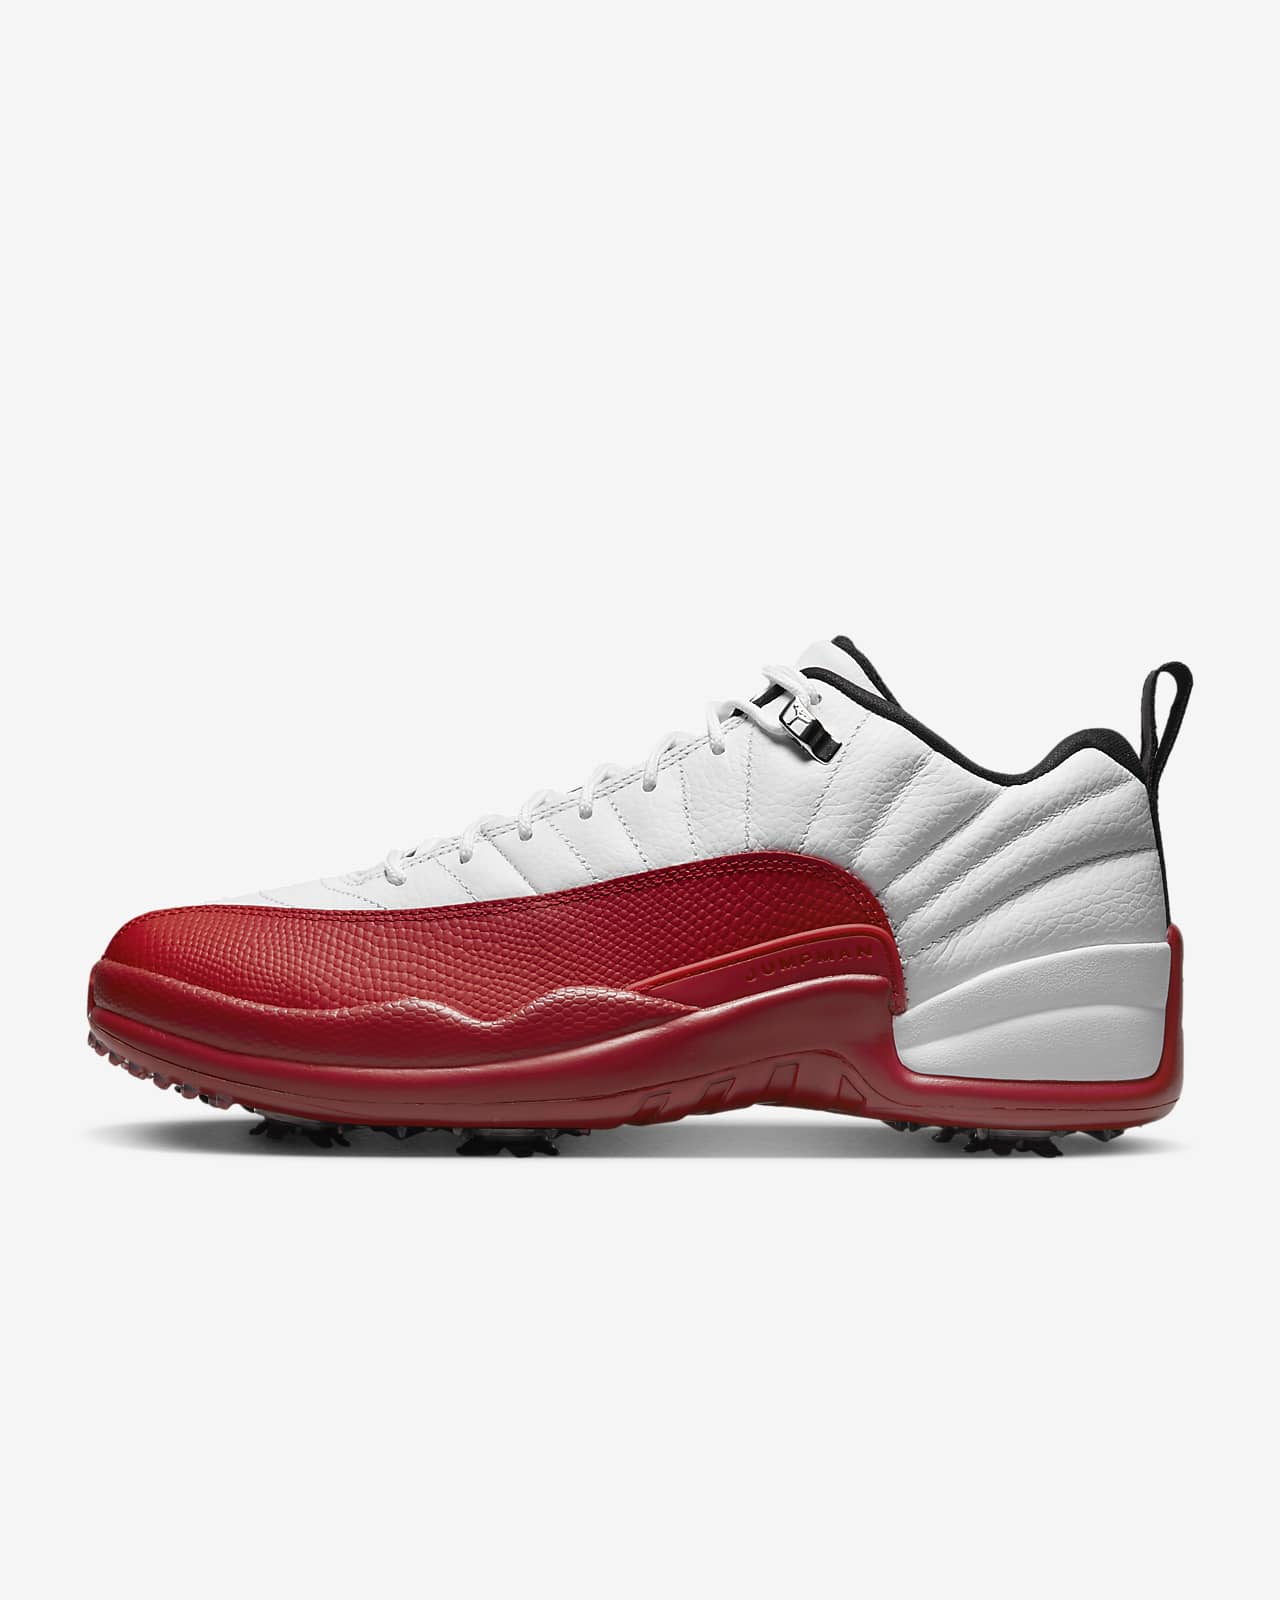 Air Jordan 12 Low Golf Shoes